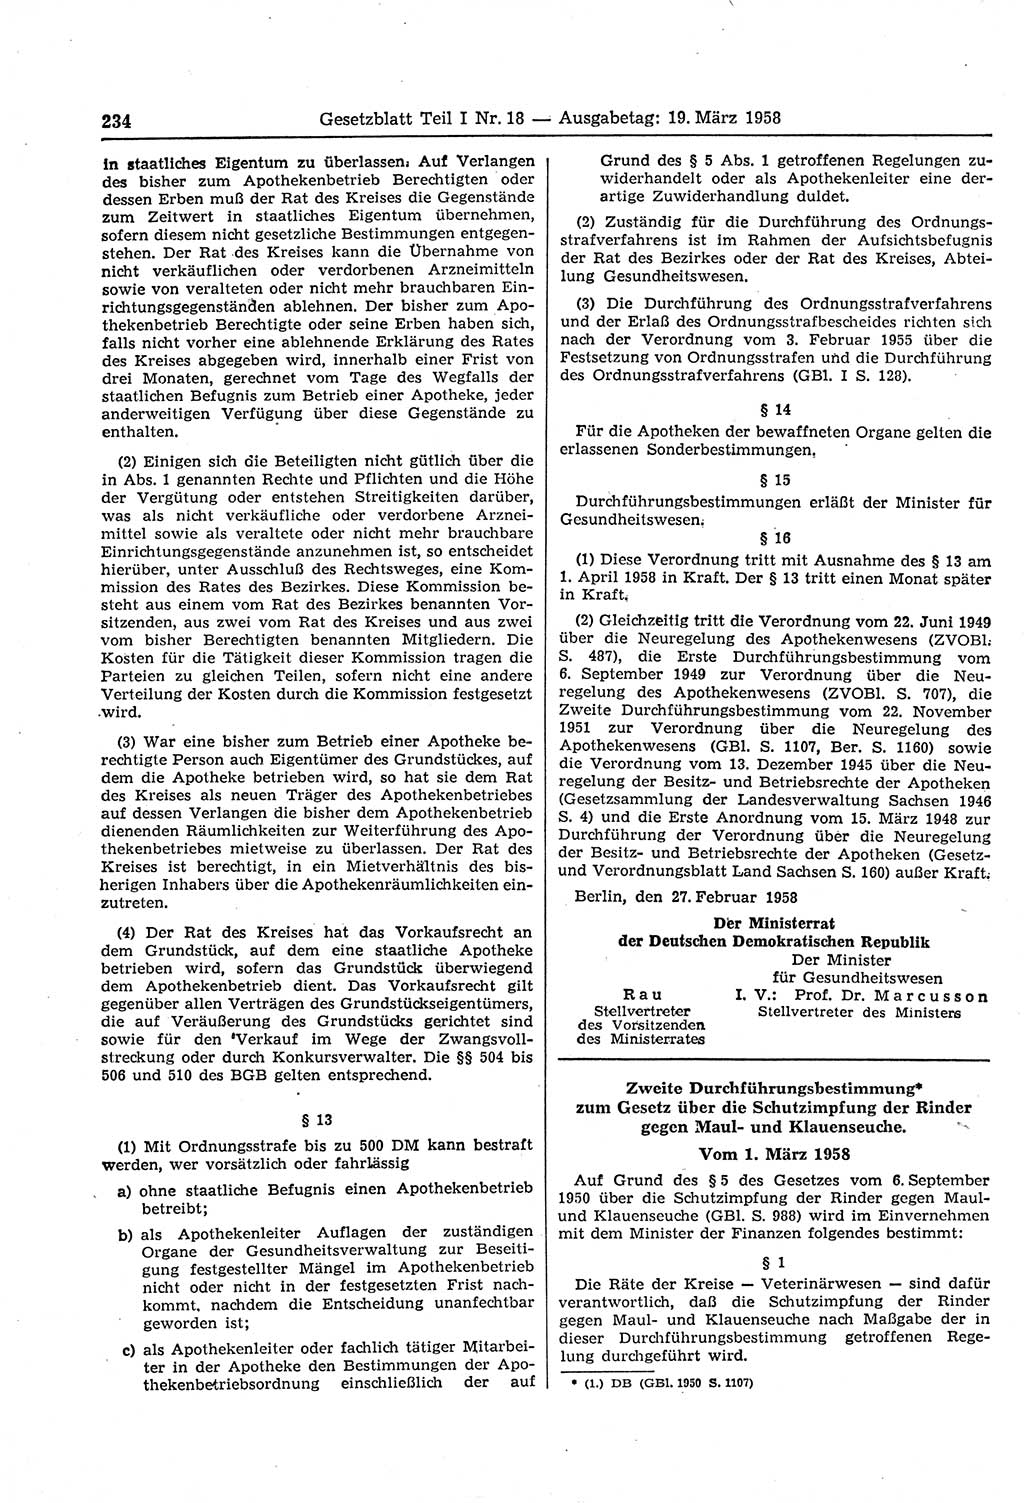 Gesetzblatt (GBl.) der Deutschen Demokratischen Republik (DDR) Teil Ⅰ 1958, Seite 234 (GBl. DDR Ⅰ 1958, S. 234)